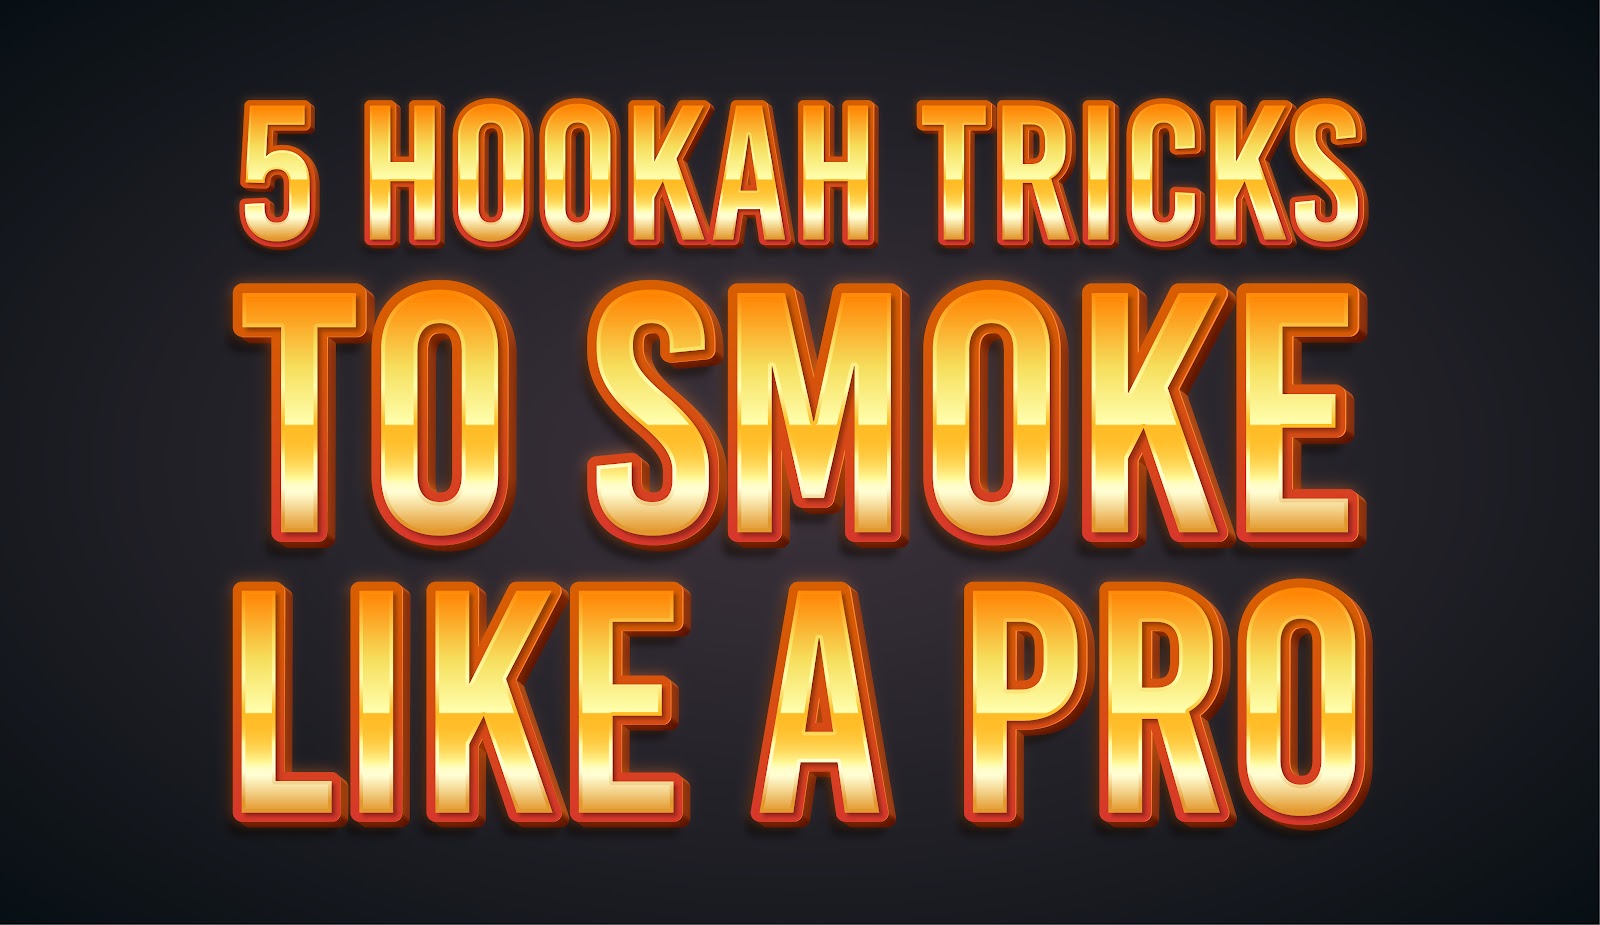 5 Hookah Tricks To Smoke Like A Pro